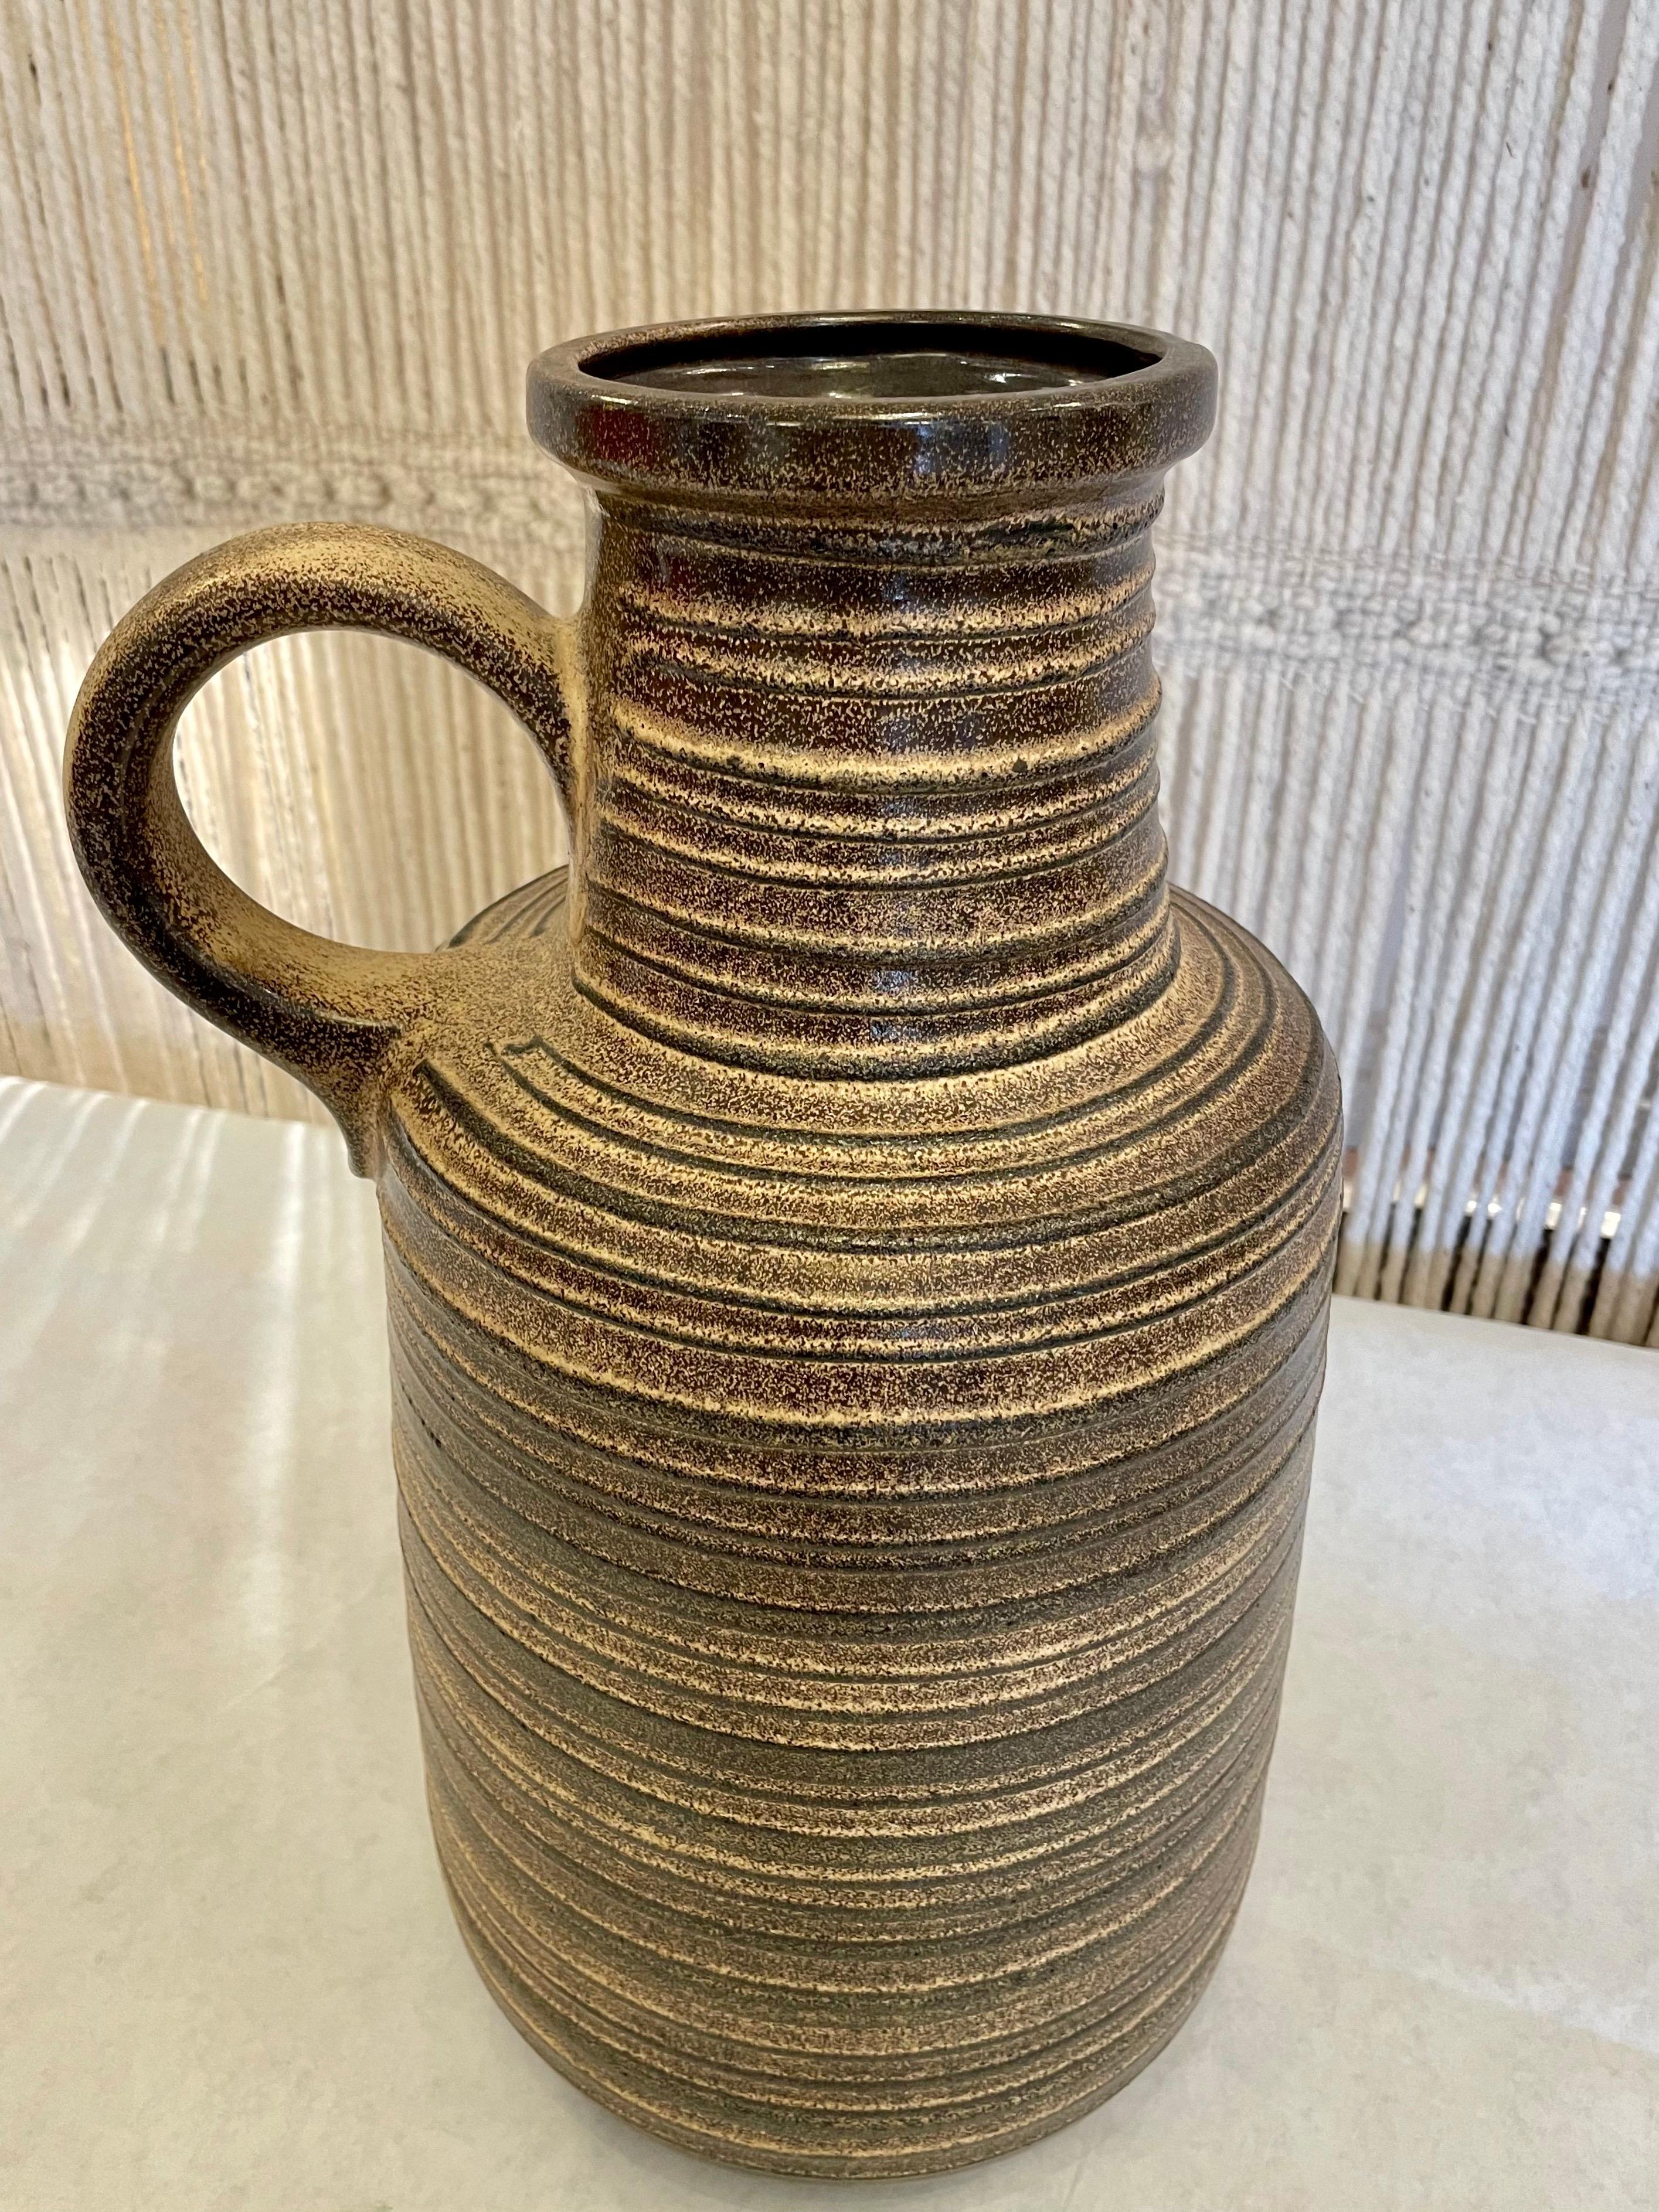 Die gerippte Struktur dieser wunderschönen Vase aus westdeutscher Keramik hat braune und beige Töne. Übergroßer Griff und in gutem Zustand.